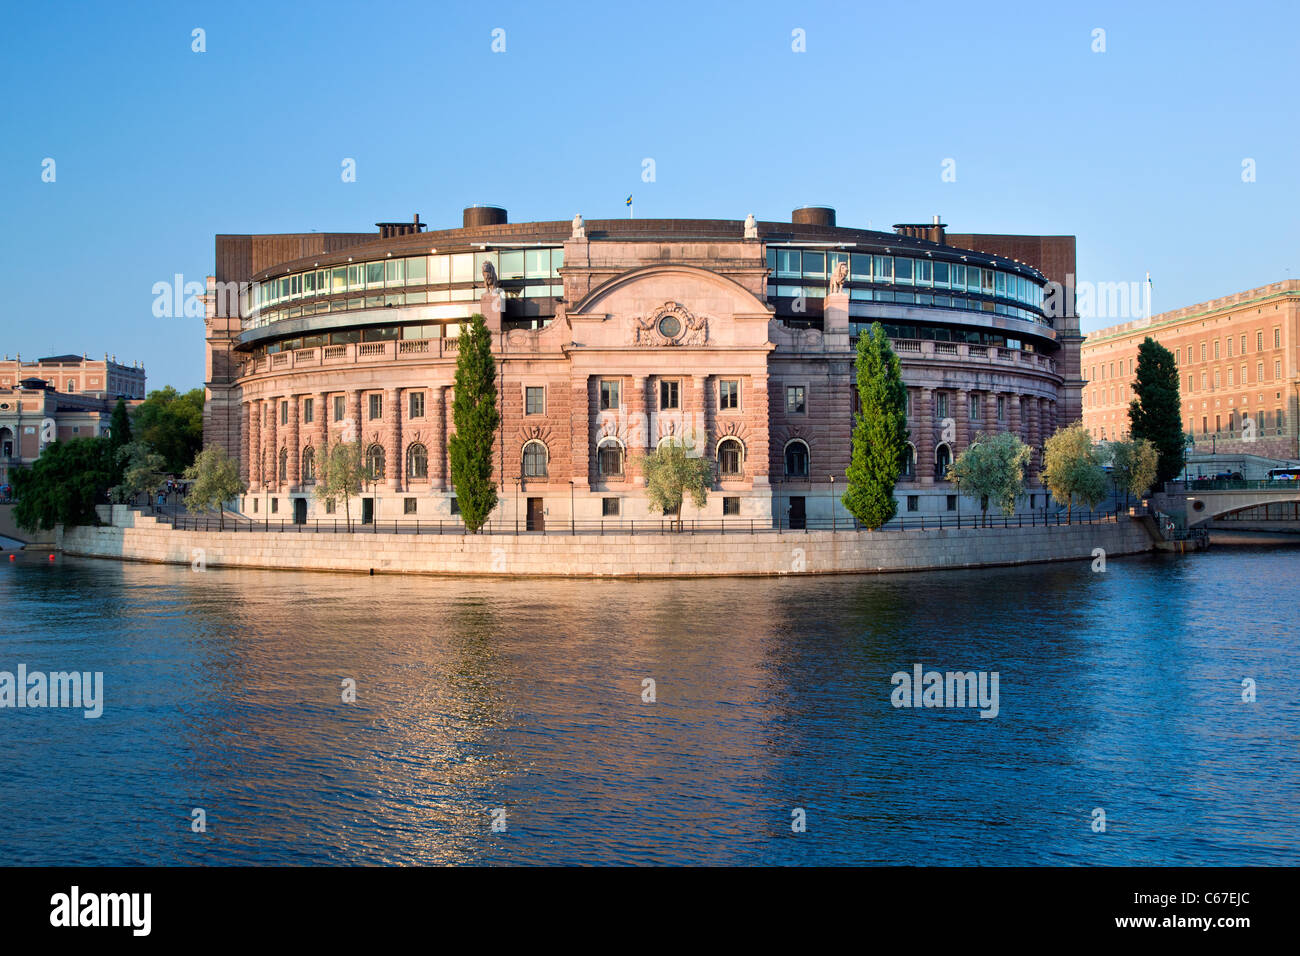 Parlamentsgebäude (Parliament House / Riksdagshuset) in Stockholm, Schweden. Außenansicht, waterfront Stockfoto